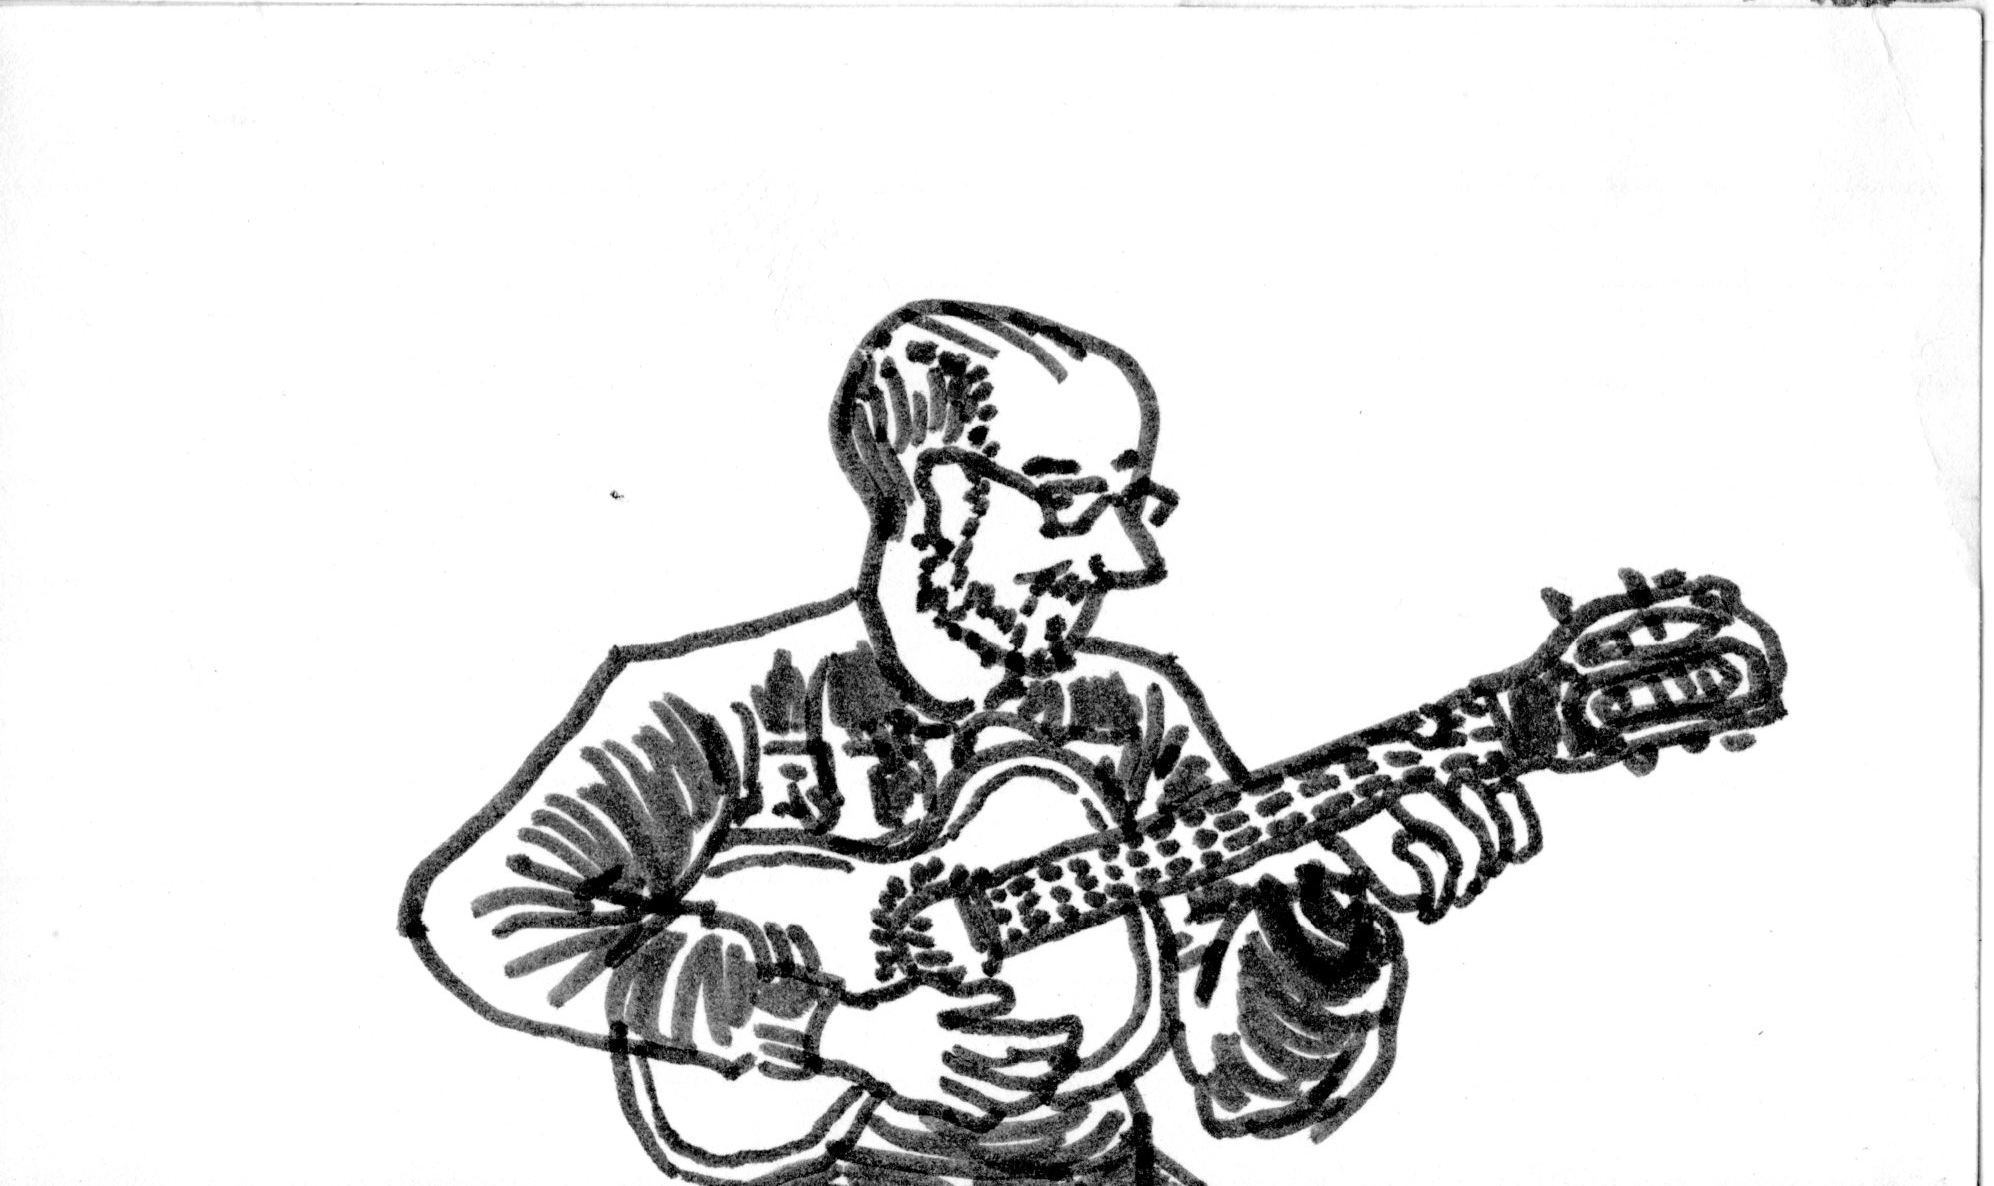 folk music musician acoustic guitar ukulele bald beard smile marker pen